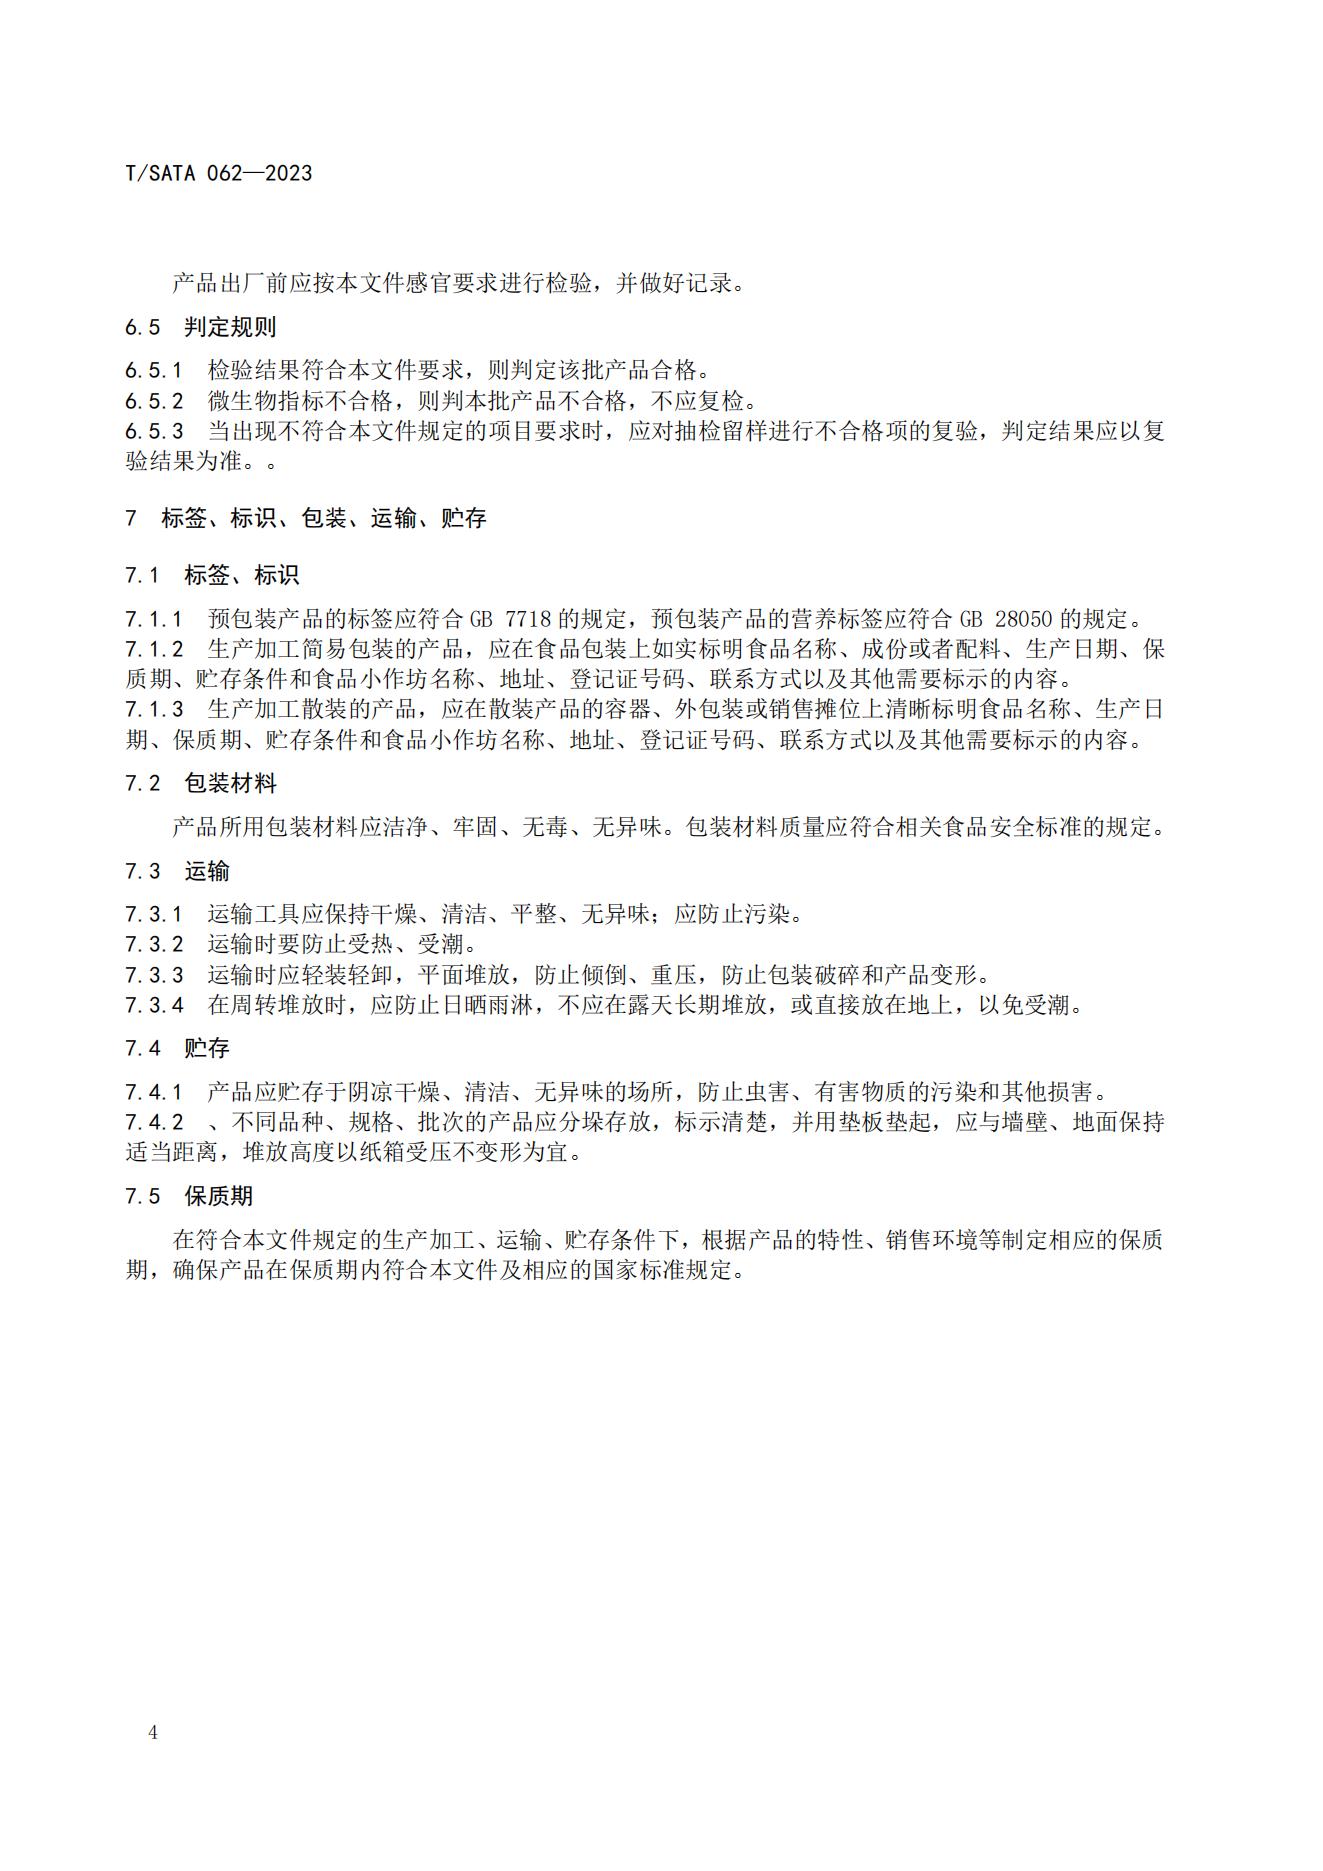 TSATA 062-2023标准文本-小作坊食品  非发酵豆制品（豆腐、豆腐干）_07.jpg